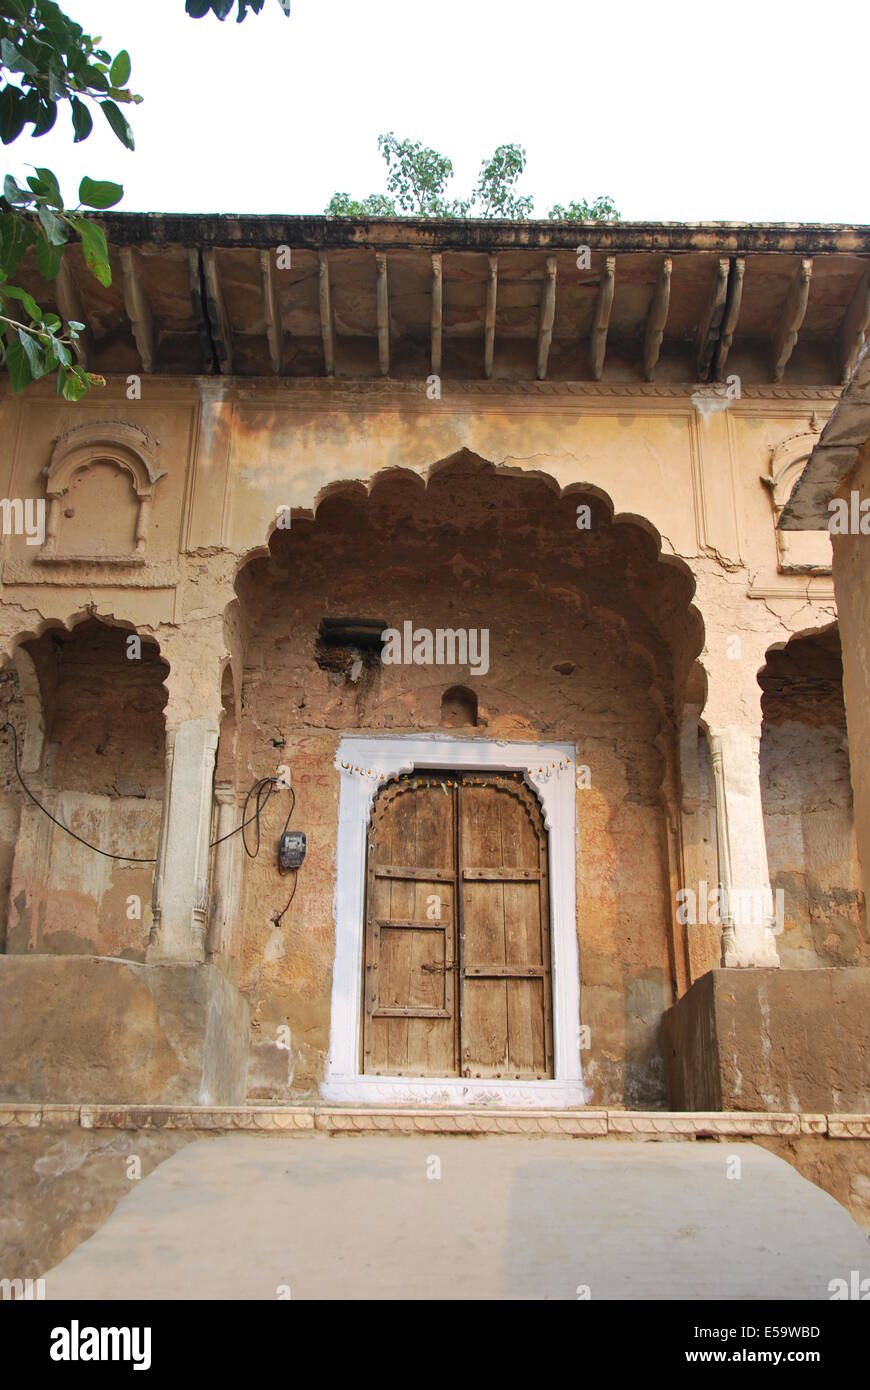 Indien. Rajasthan Elaborate Dorfstruktur Tür. Geschmückten Torbogen. Innentür.  Holz und Stein. Natürliche Farben. Ausgewogenes Design. Stockfoto